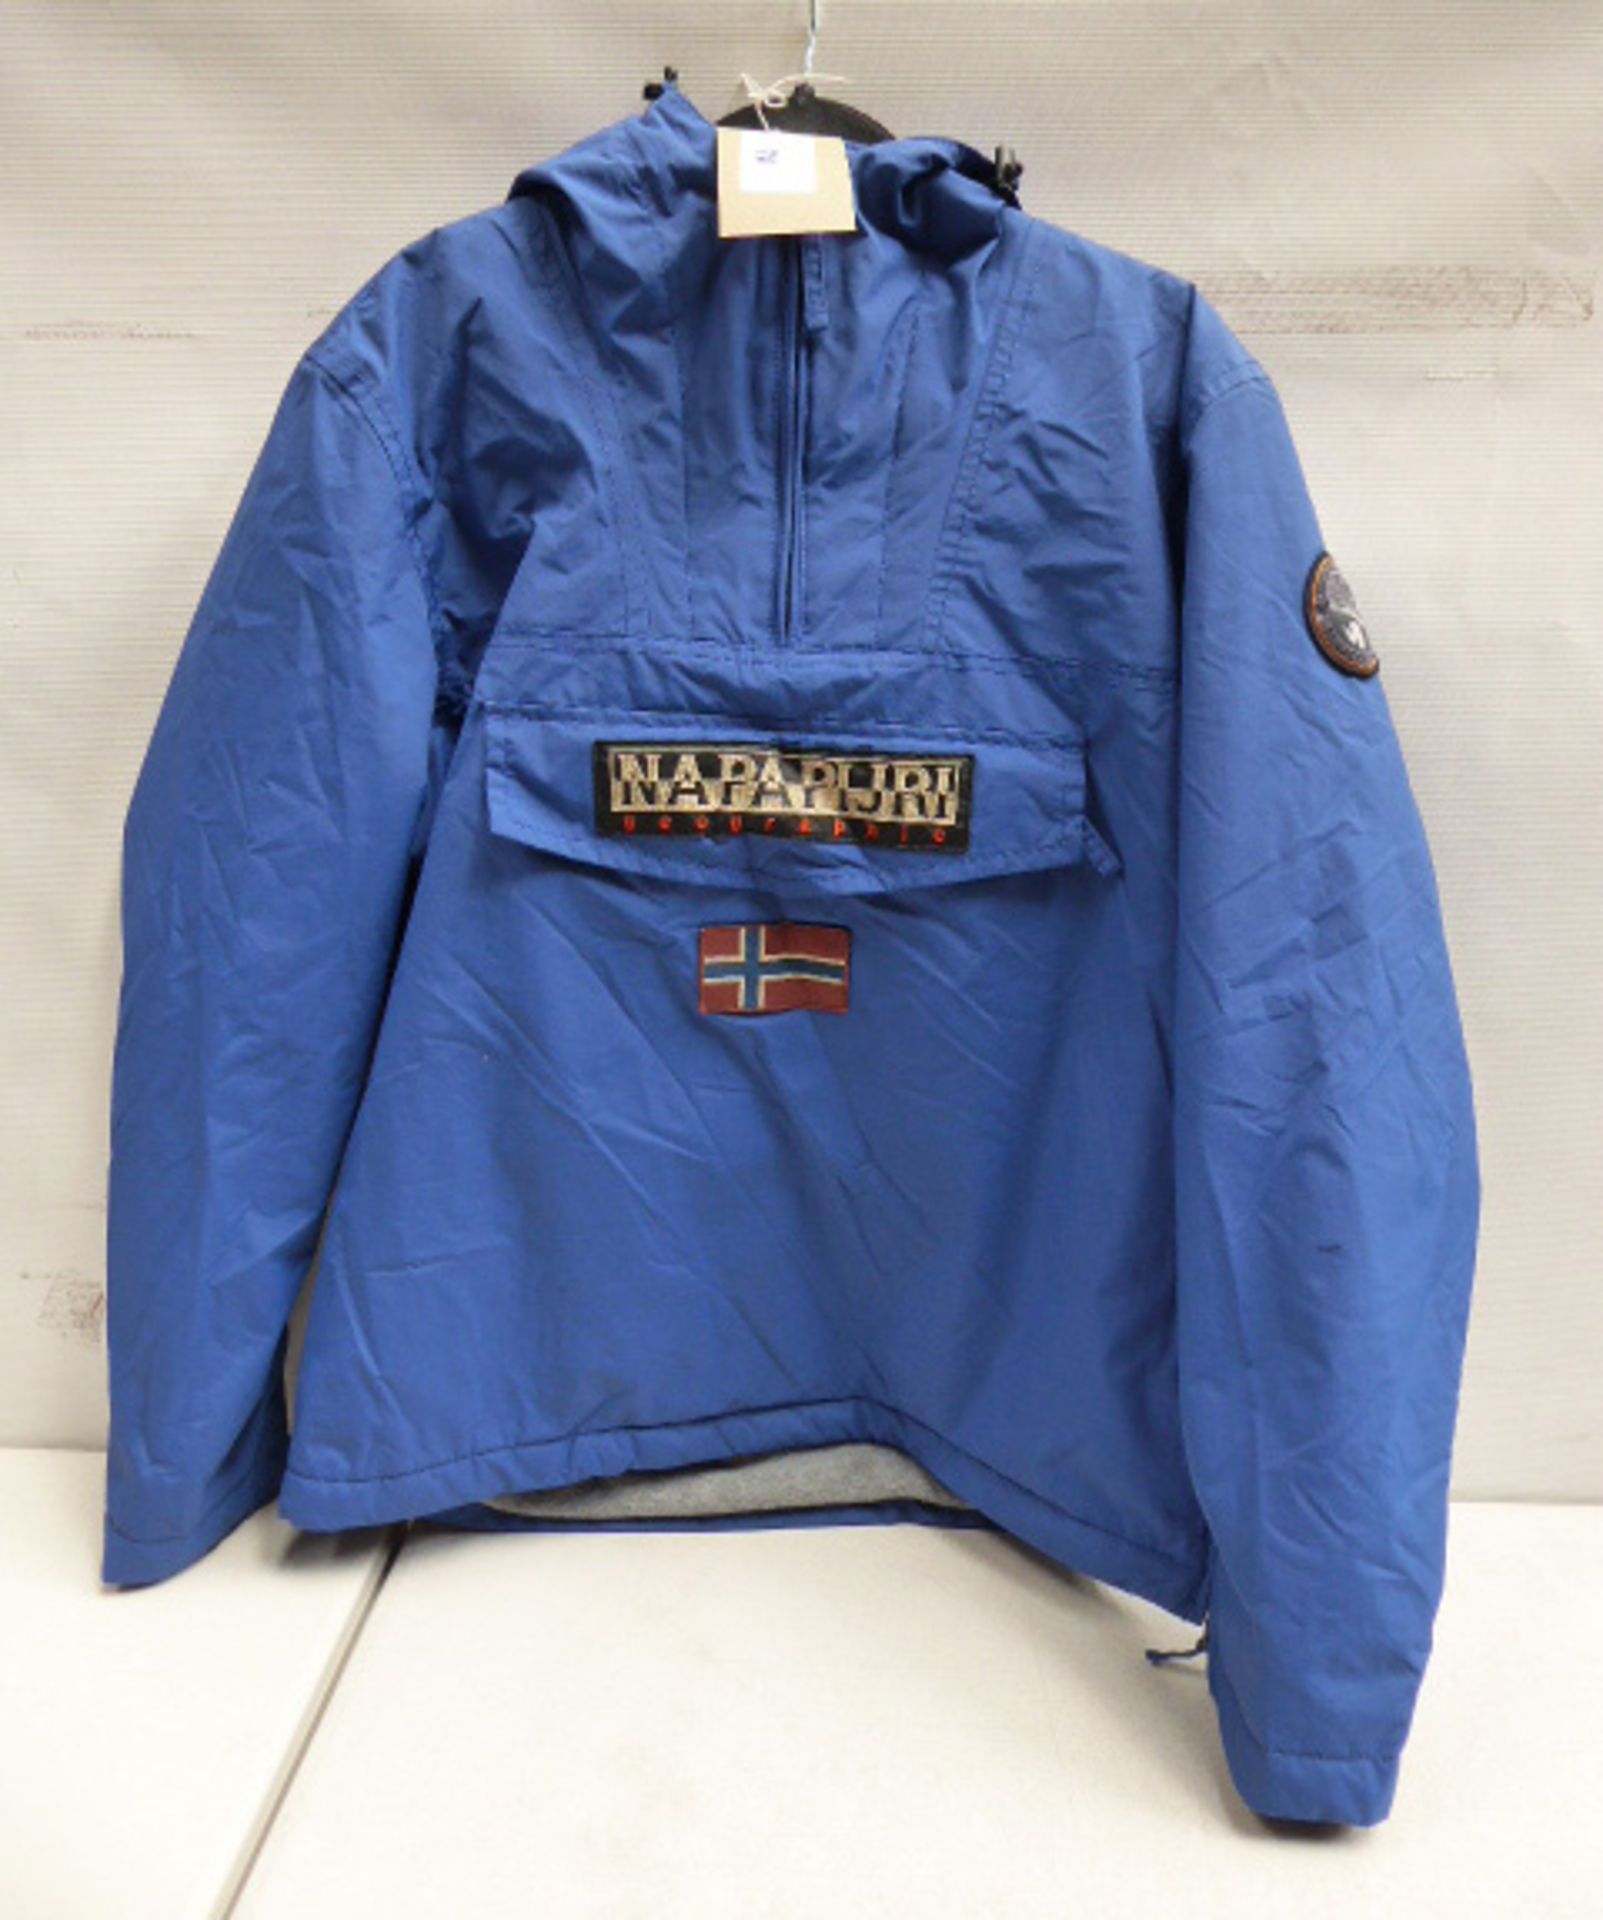 Napapijri blue rainforest jacket size large (used)